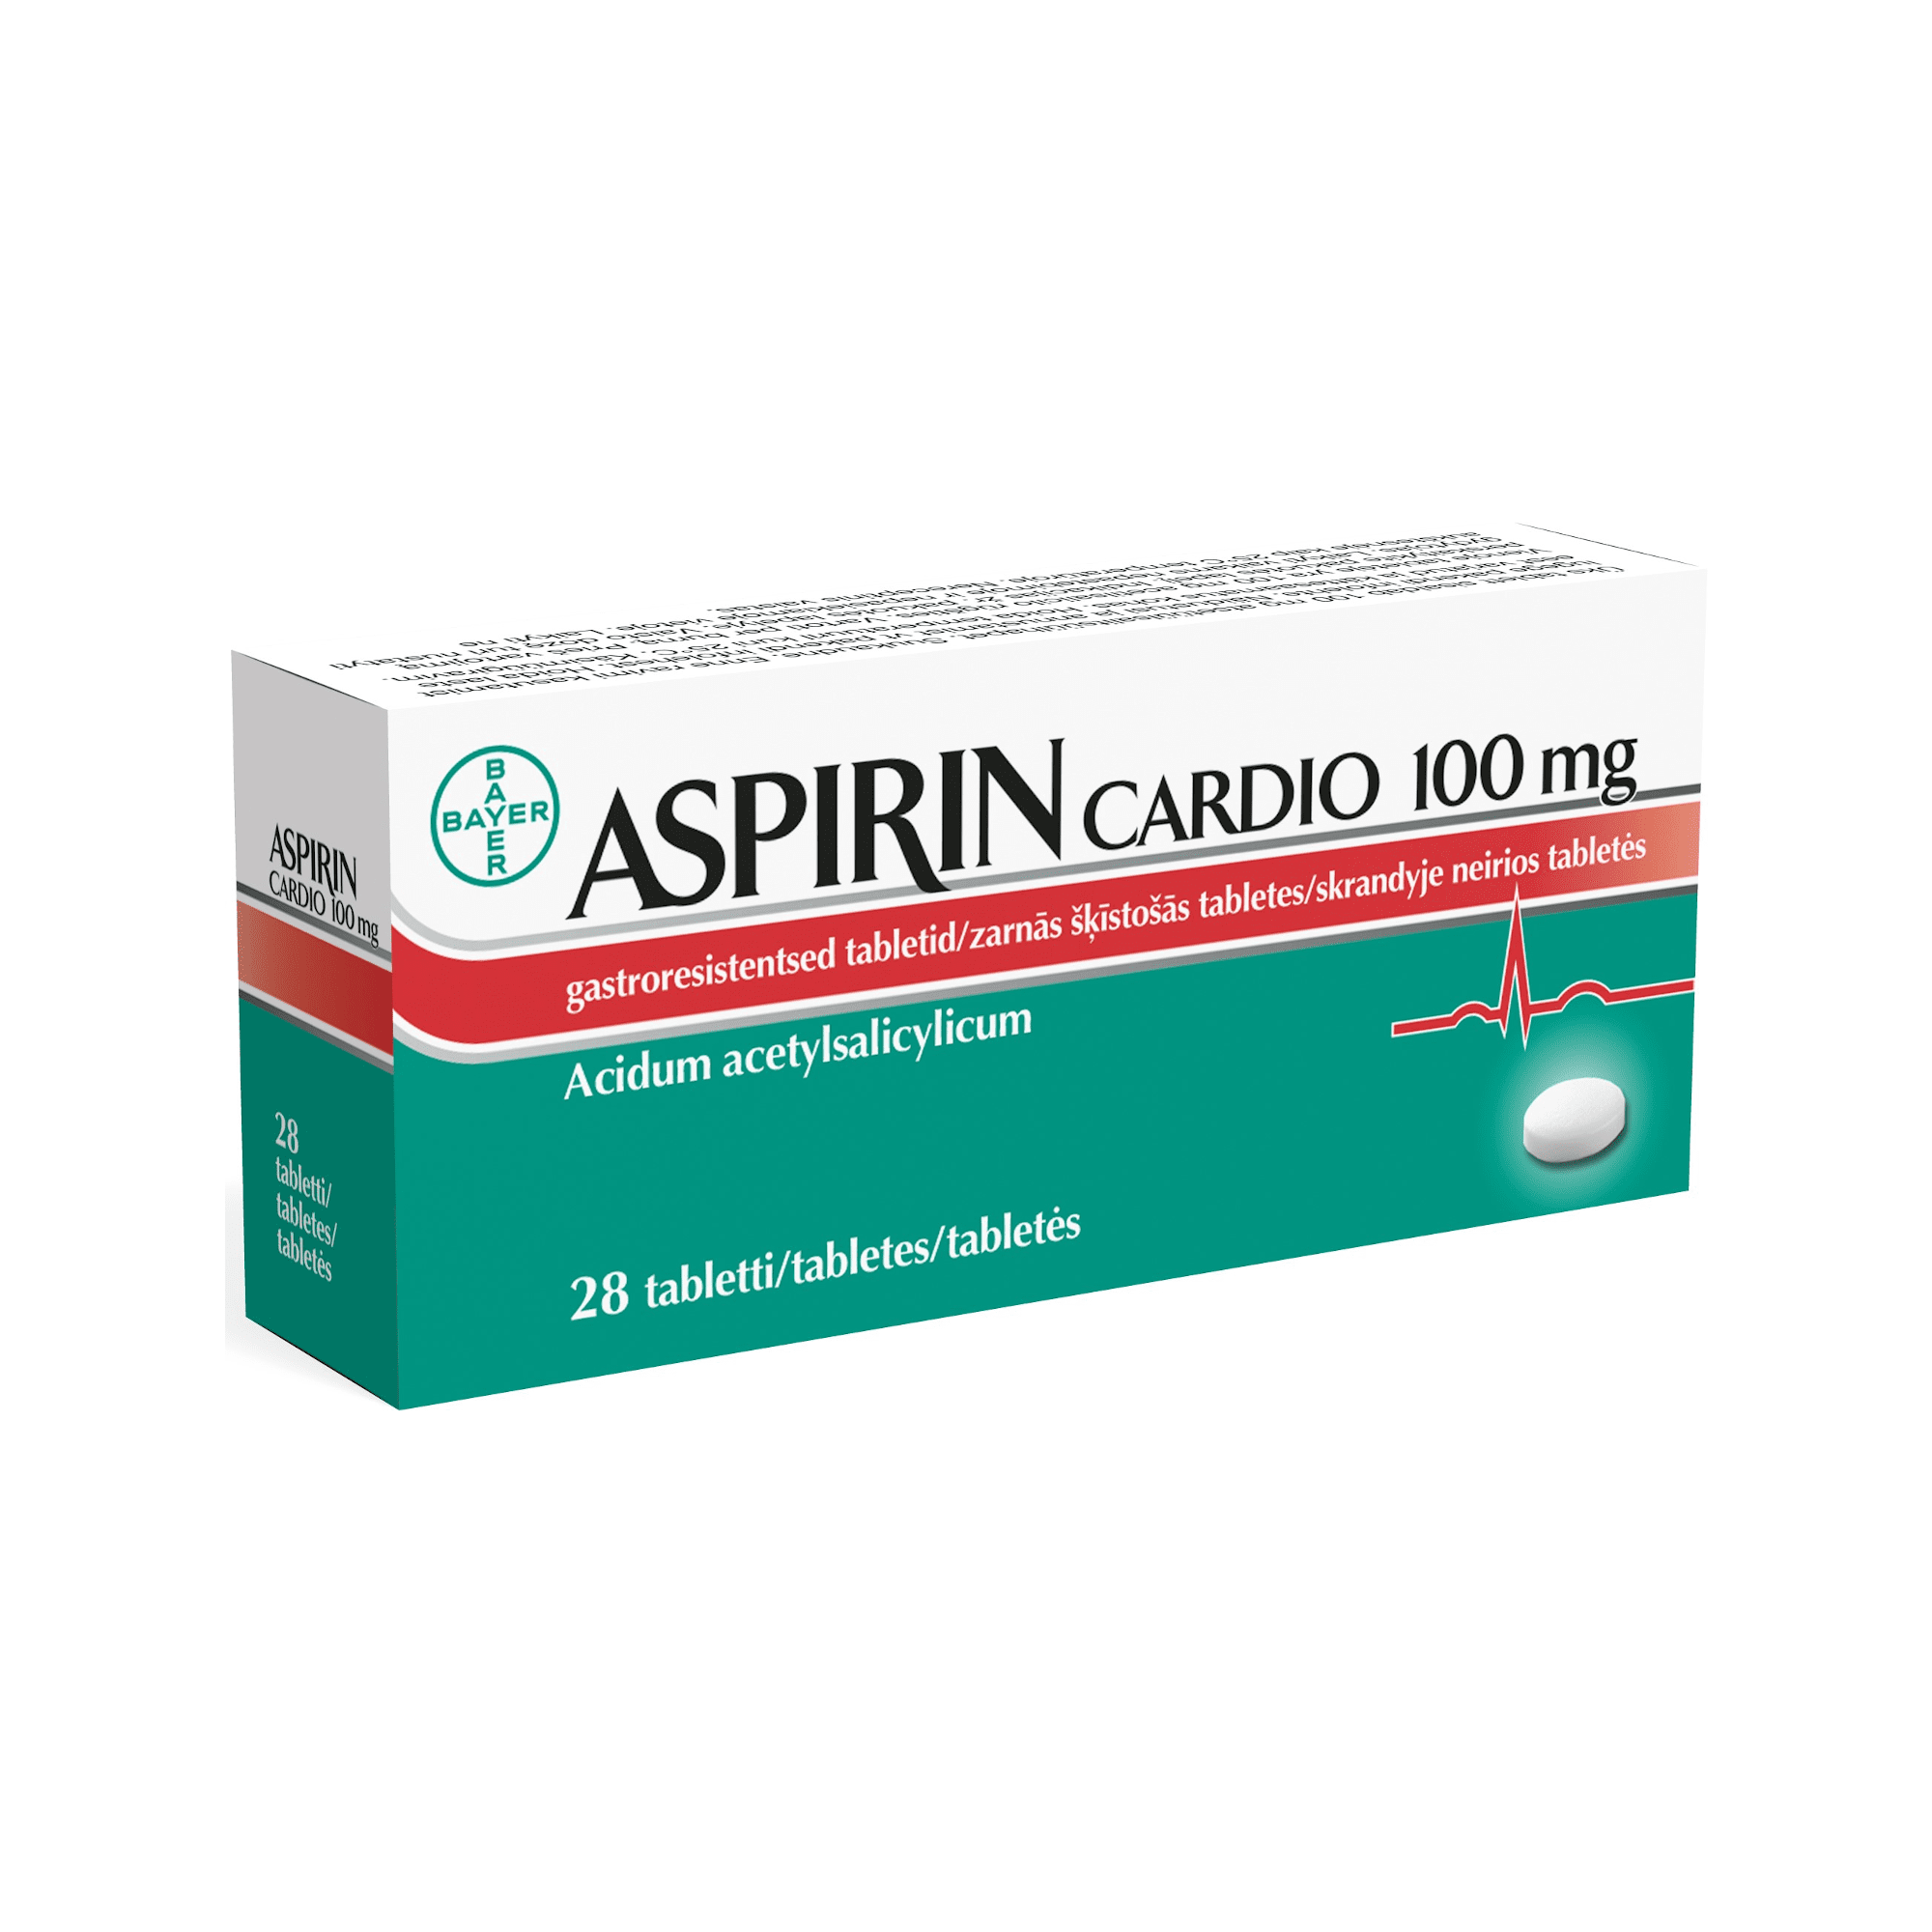 Aspirin Cardio 100 mg zarnās šķīstošās tabletes N28 .